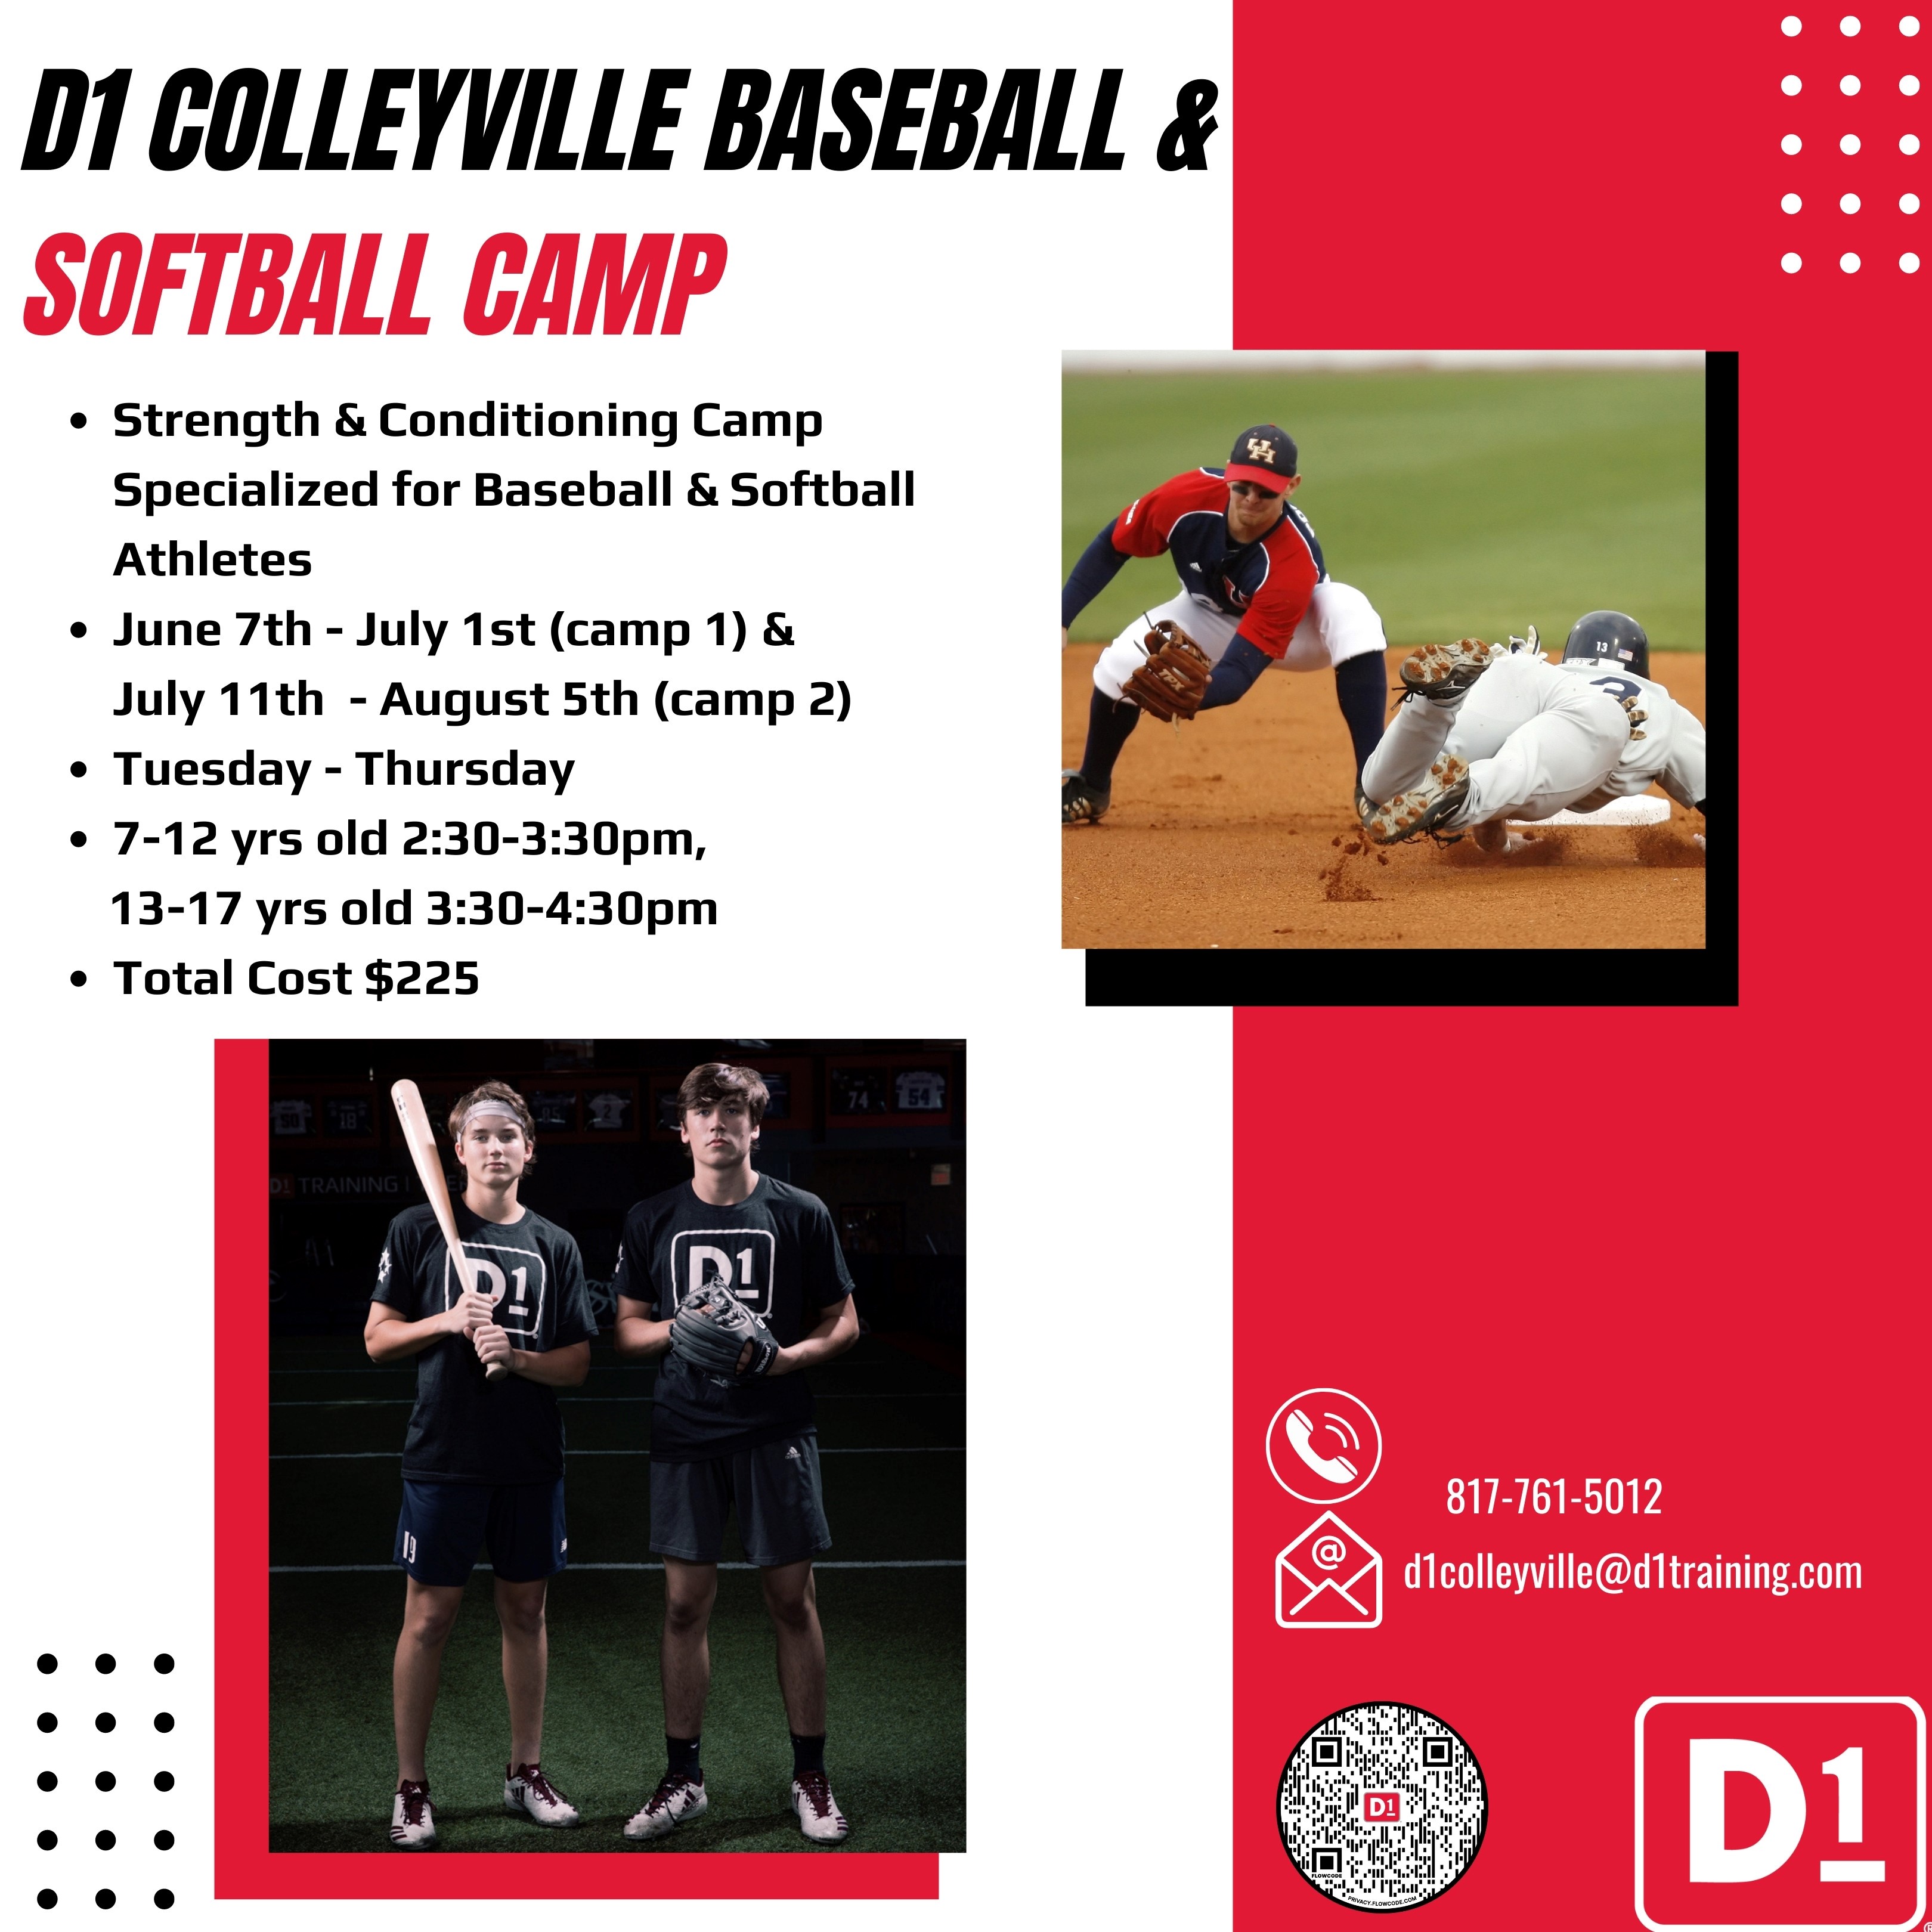 D1 Colleyville Baseball & Softball Camp